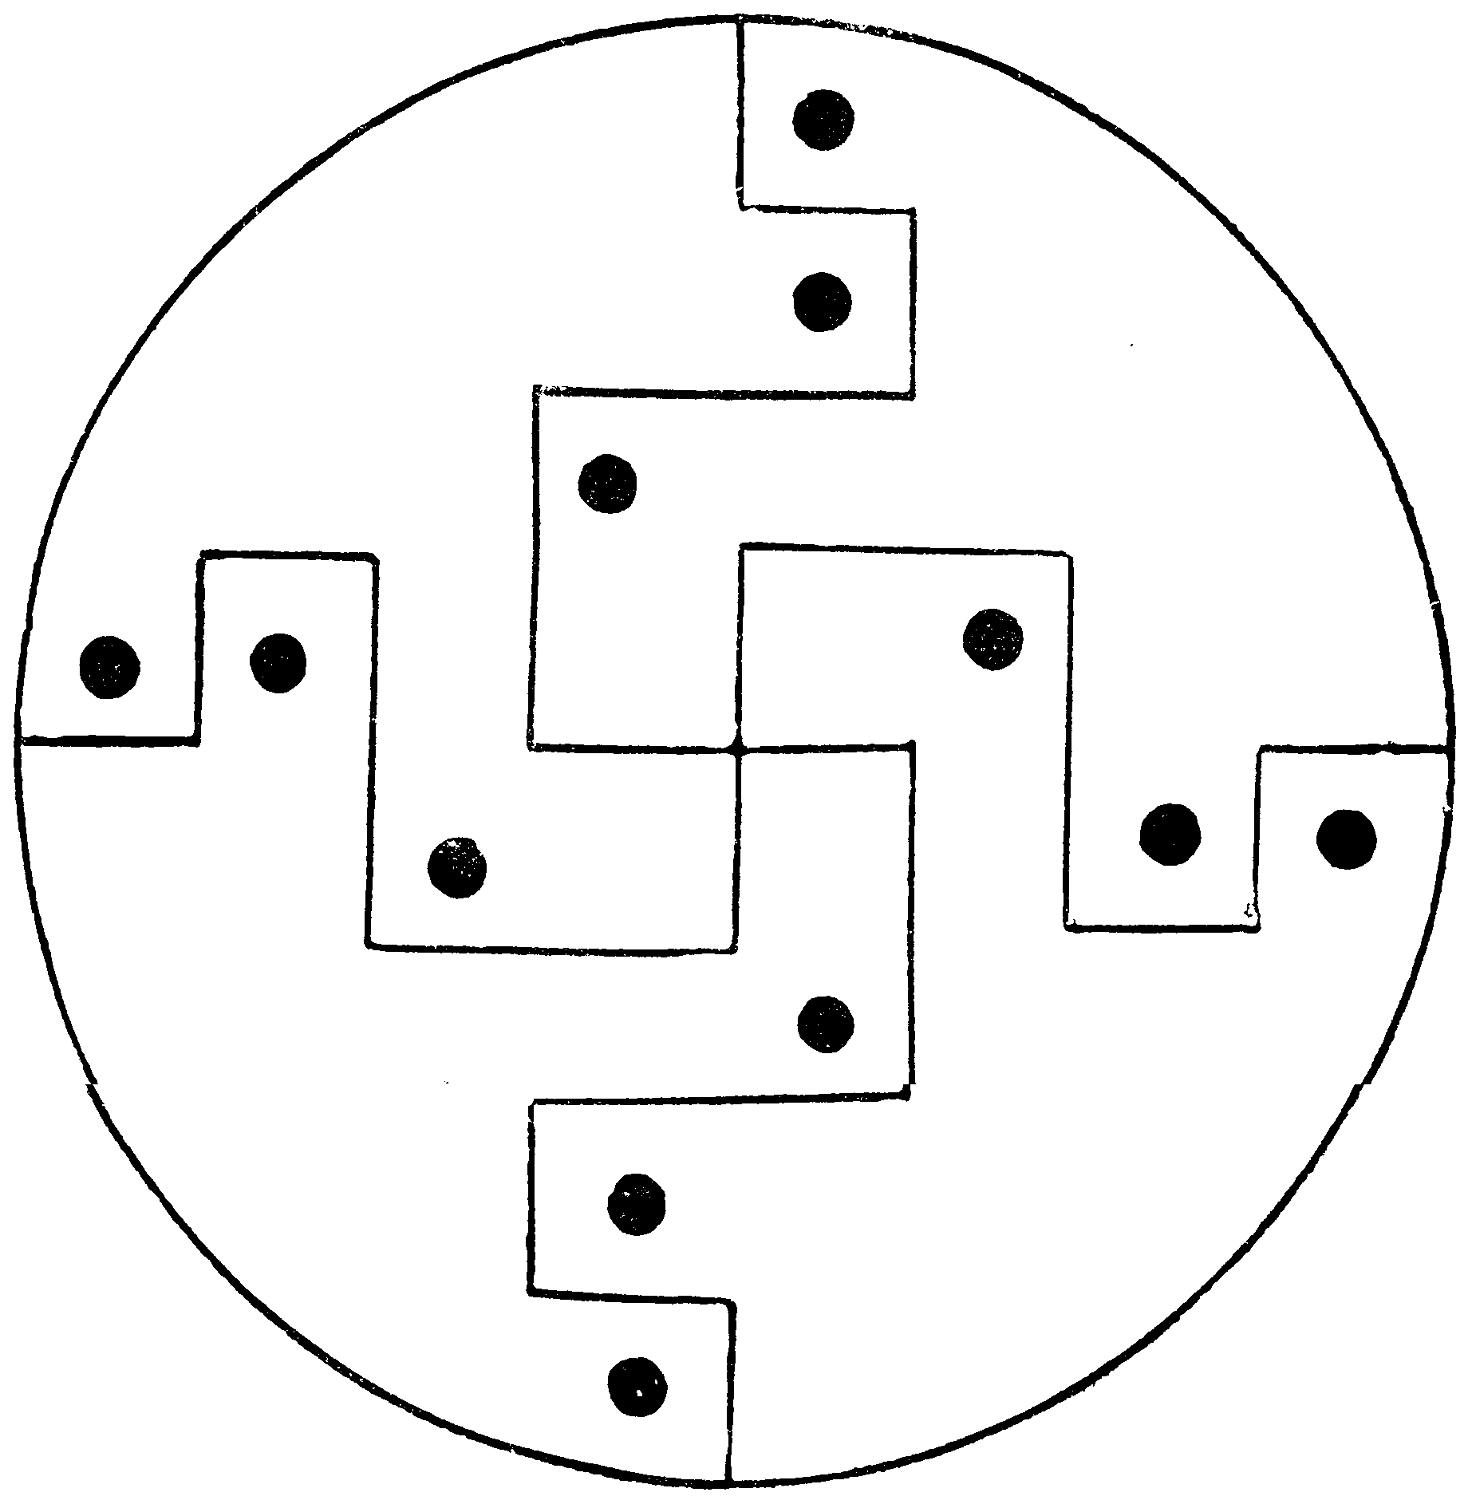 Divided circle